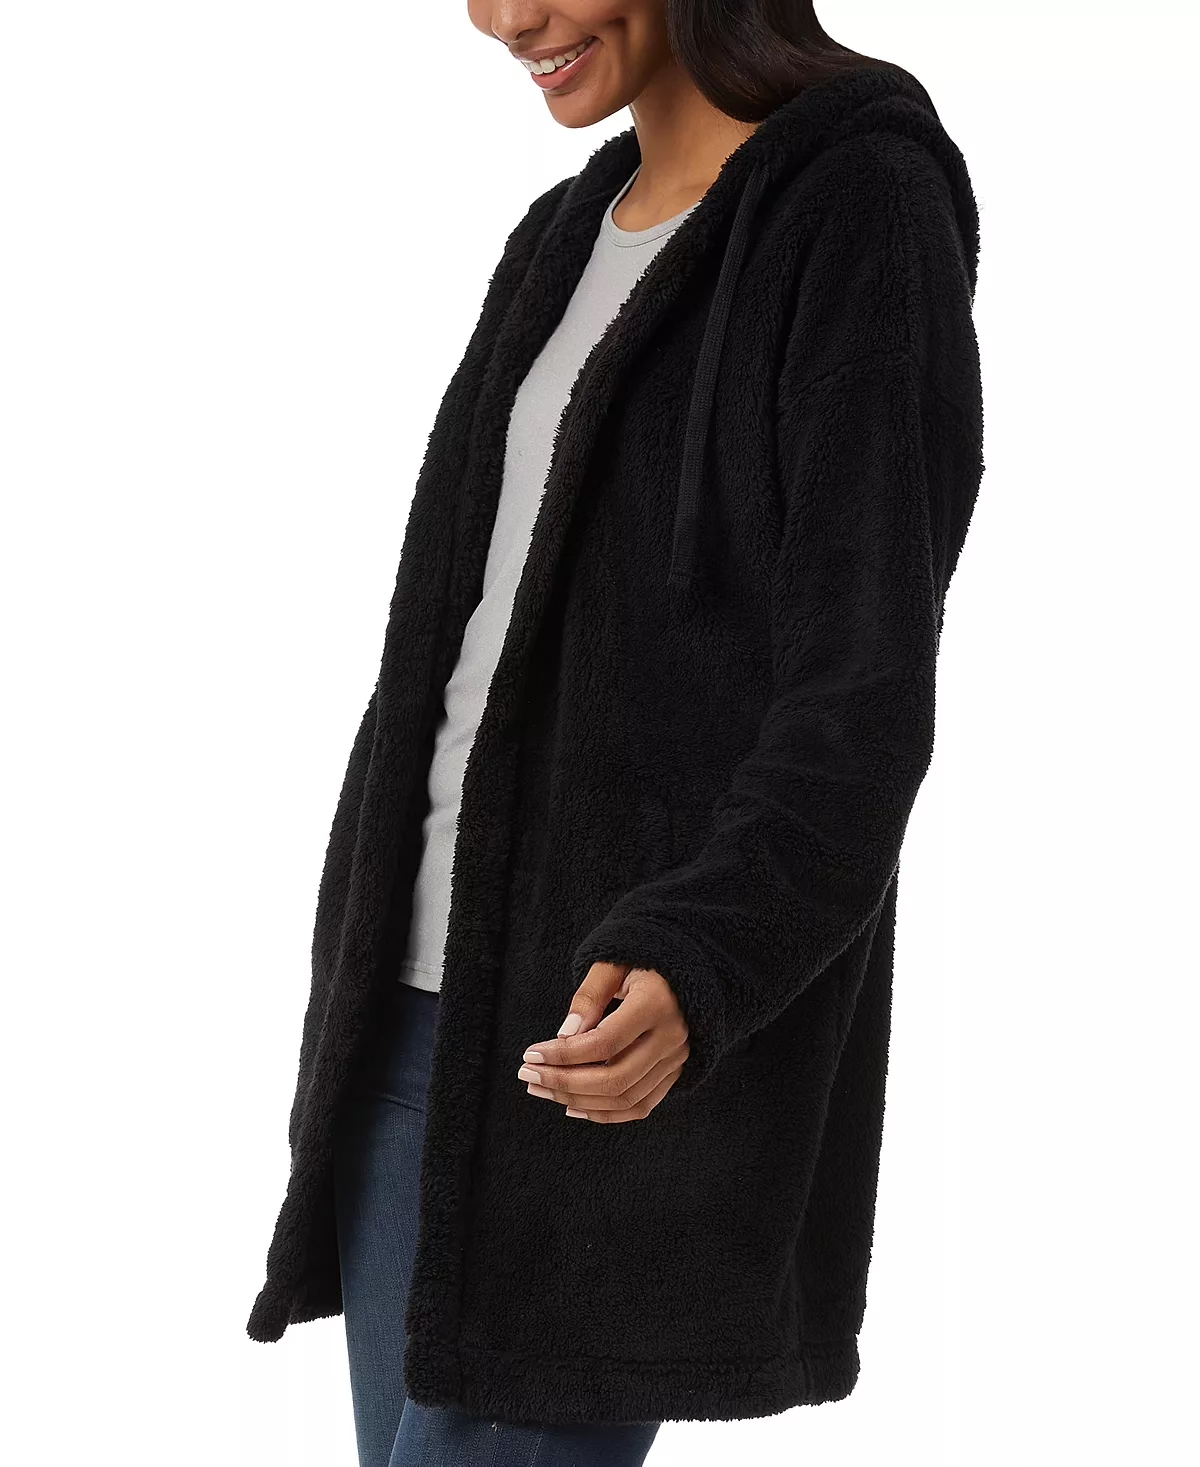 32 Degrees Women's Fleece Hooded Open Cardigan